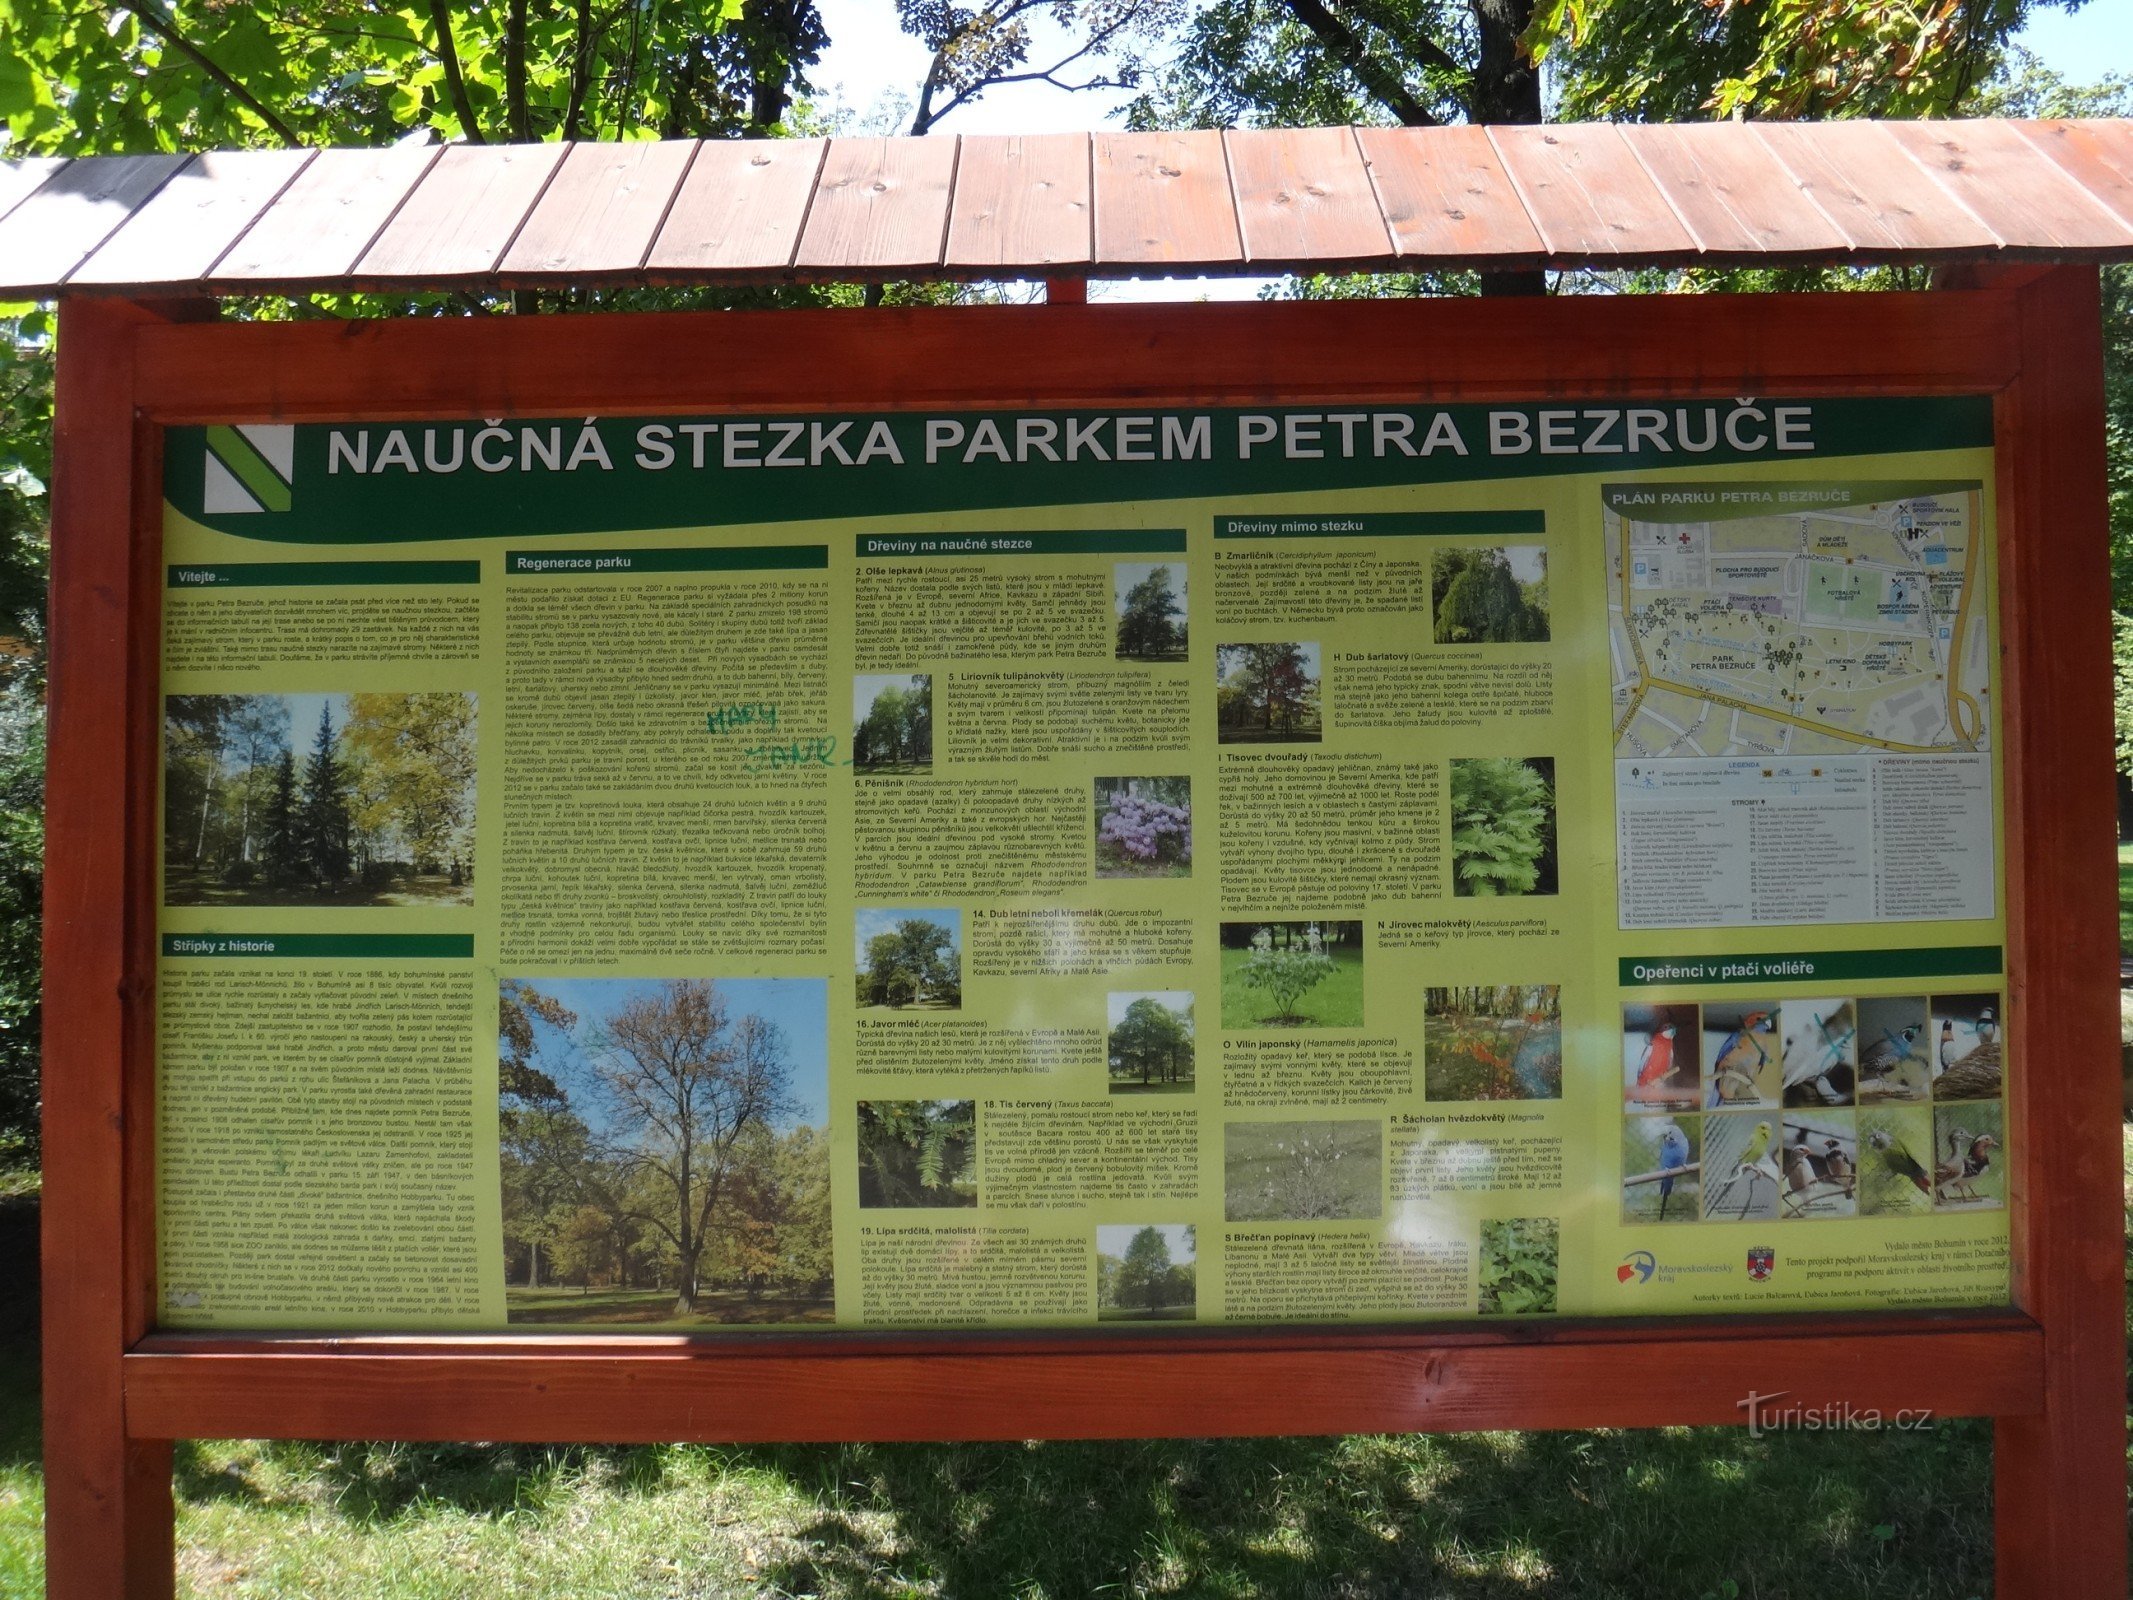 traseu educațional în parcul P. Bezruče